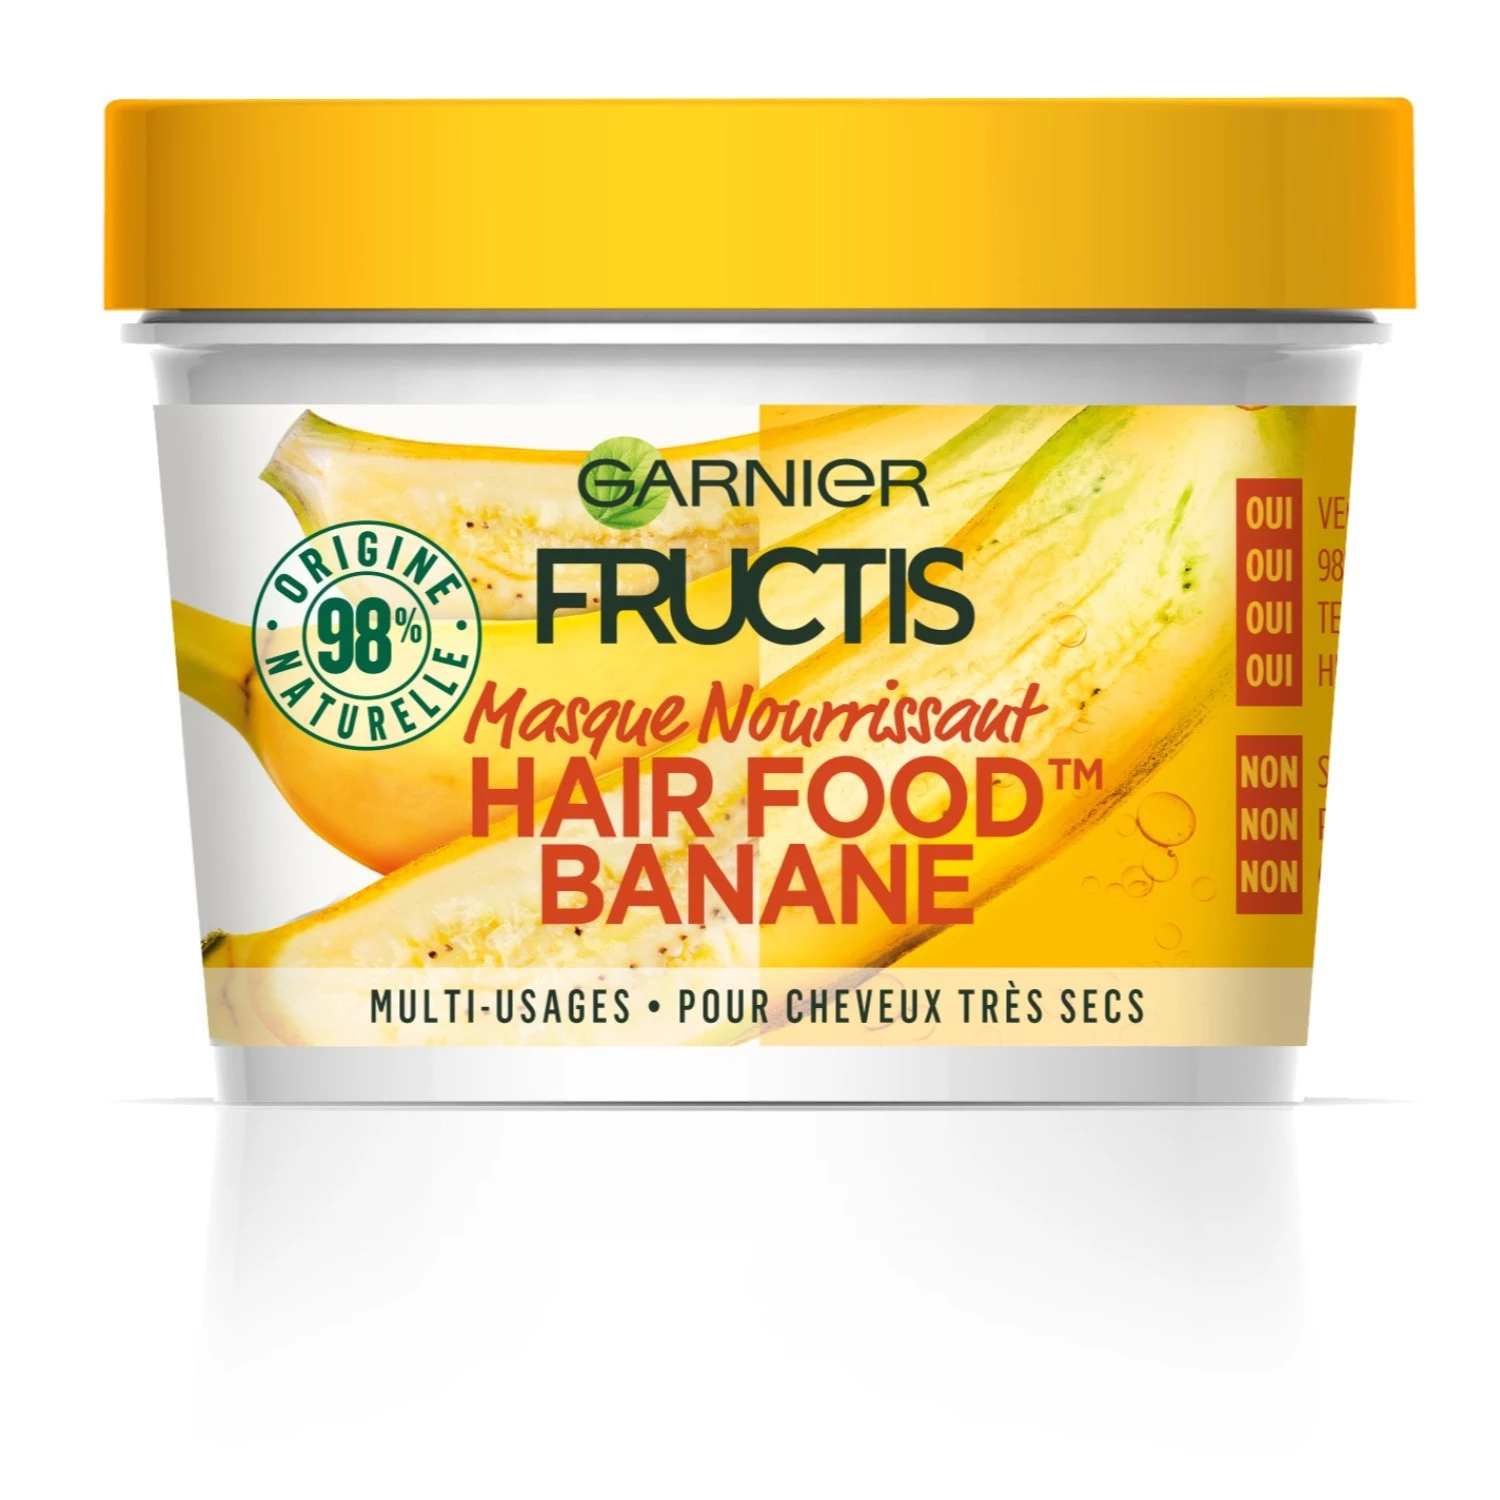 Maschera nutriente alla banana per capelli alimentare 300ML - FRUCTIS